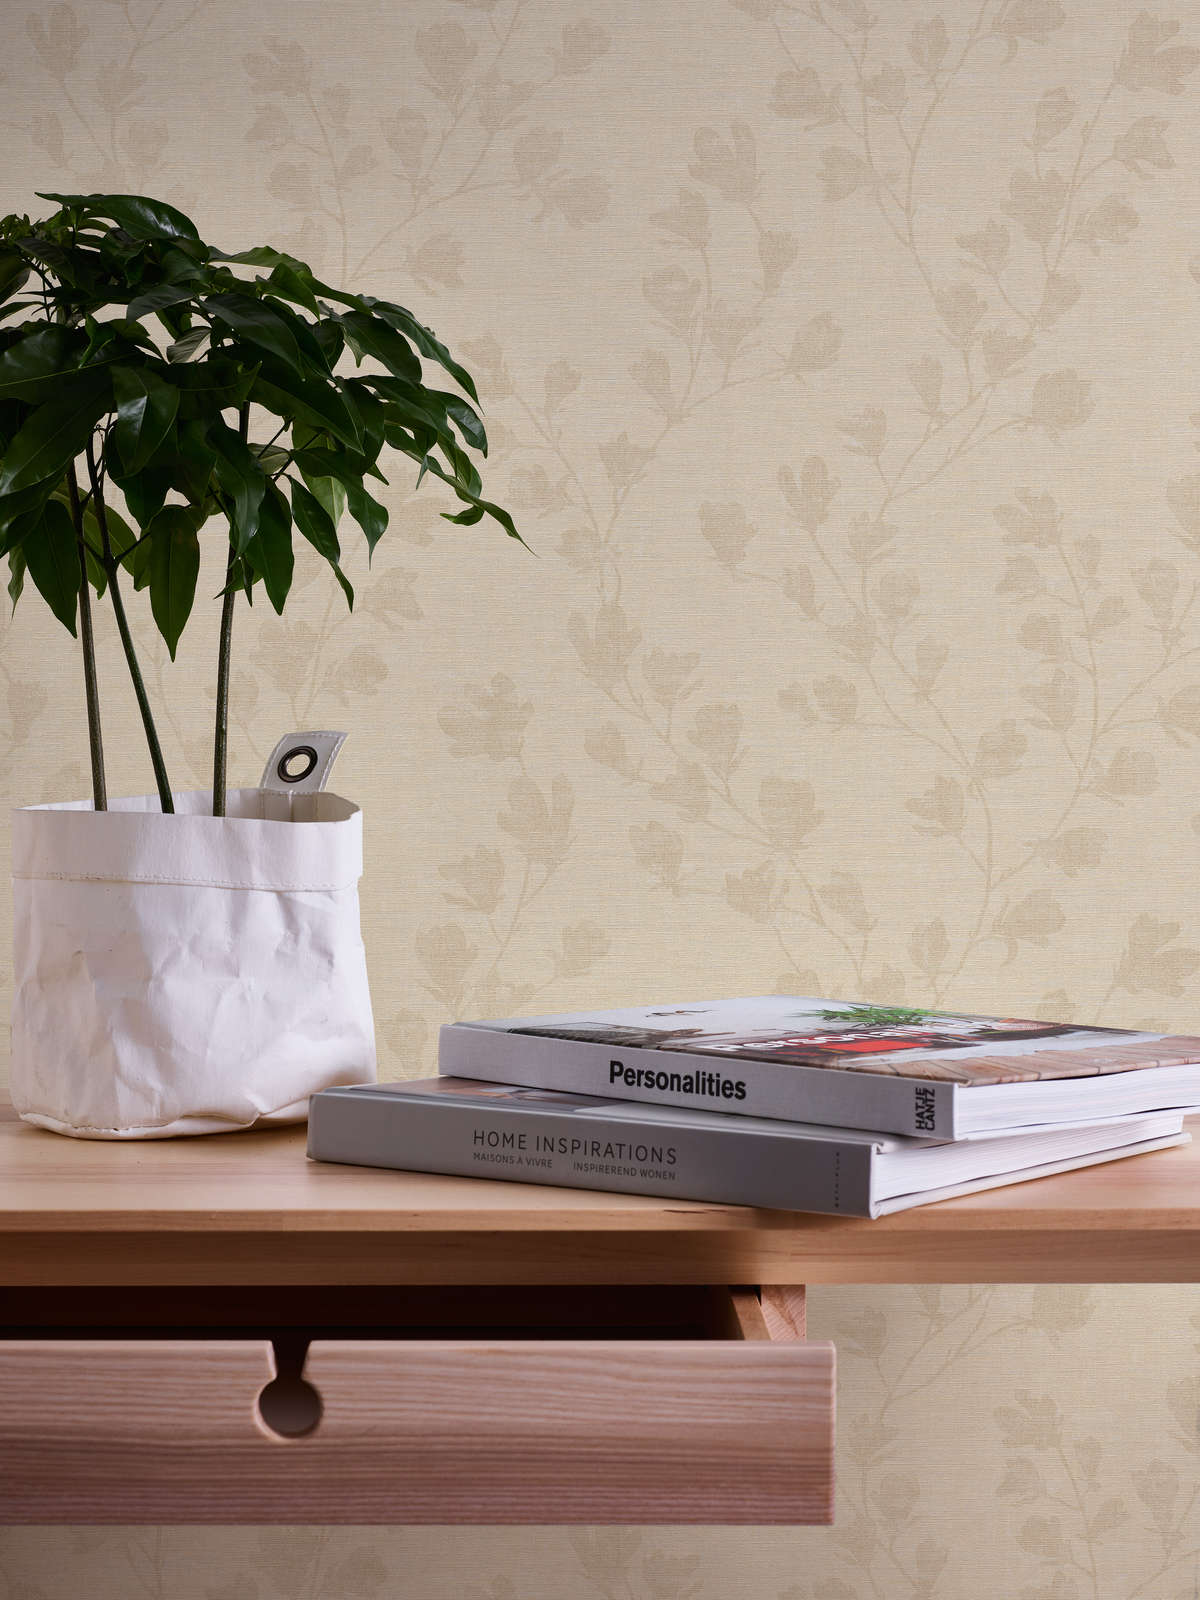             Papier peint à motifs avec des feuilles dans le style maison de campagne - crème, beige
        